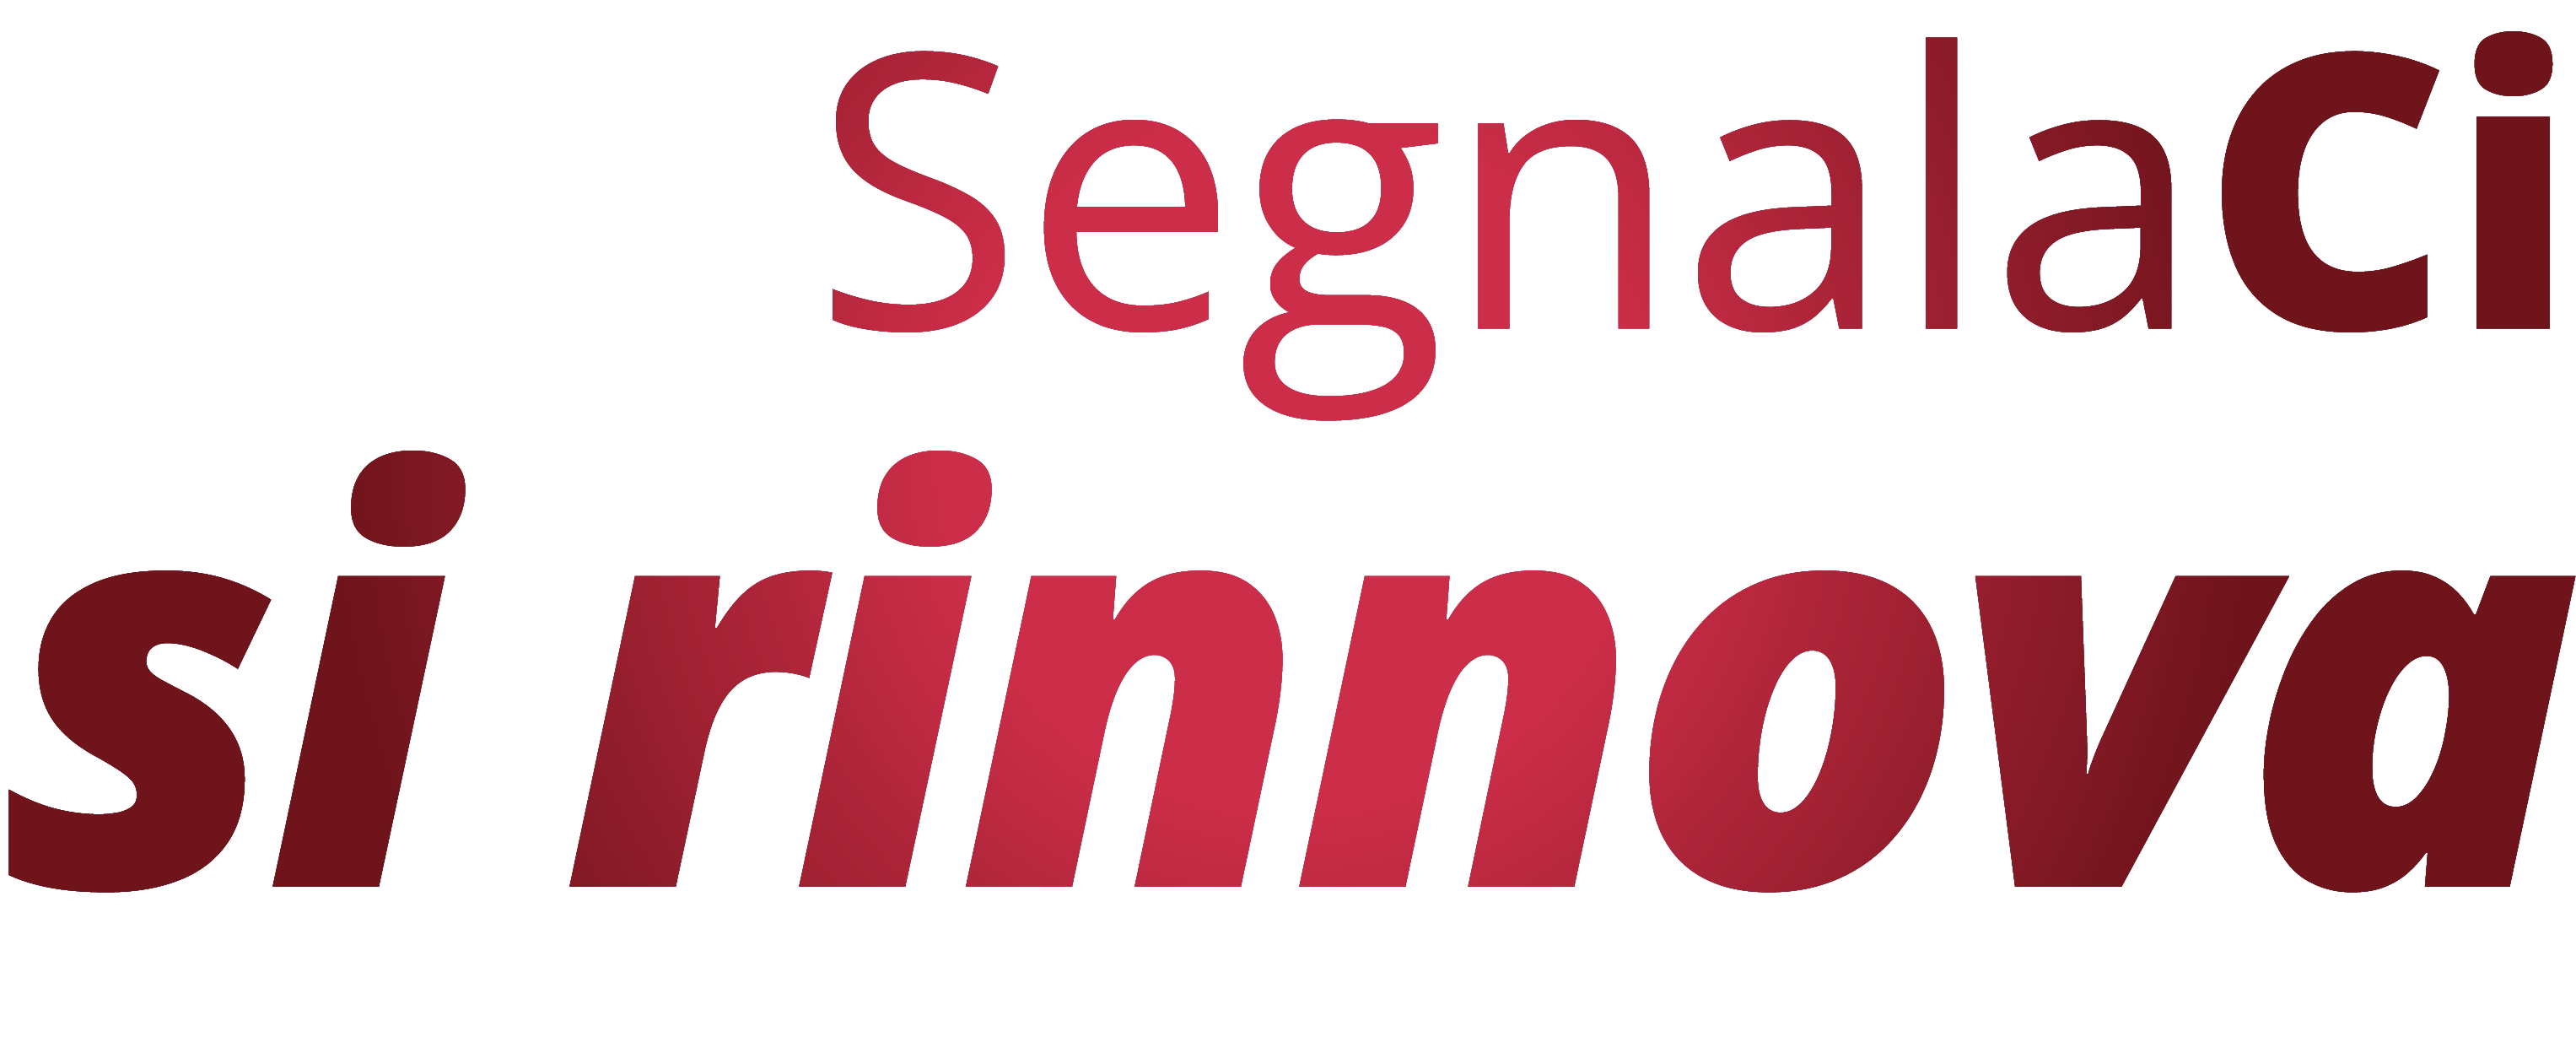 Logo Segnalaci